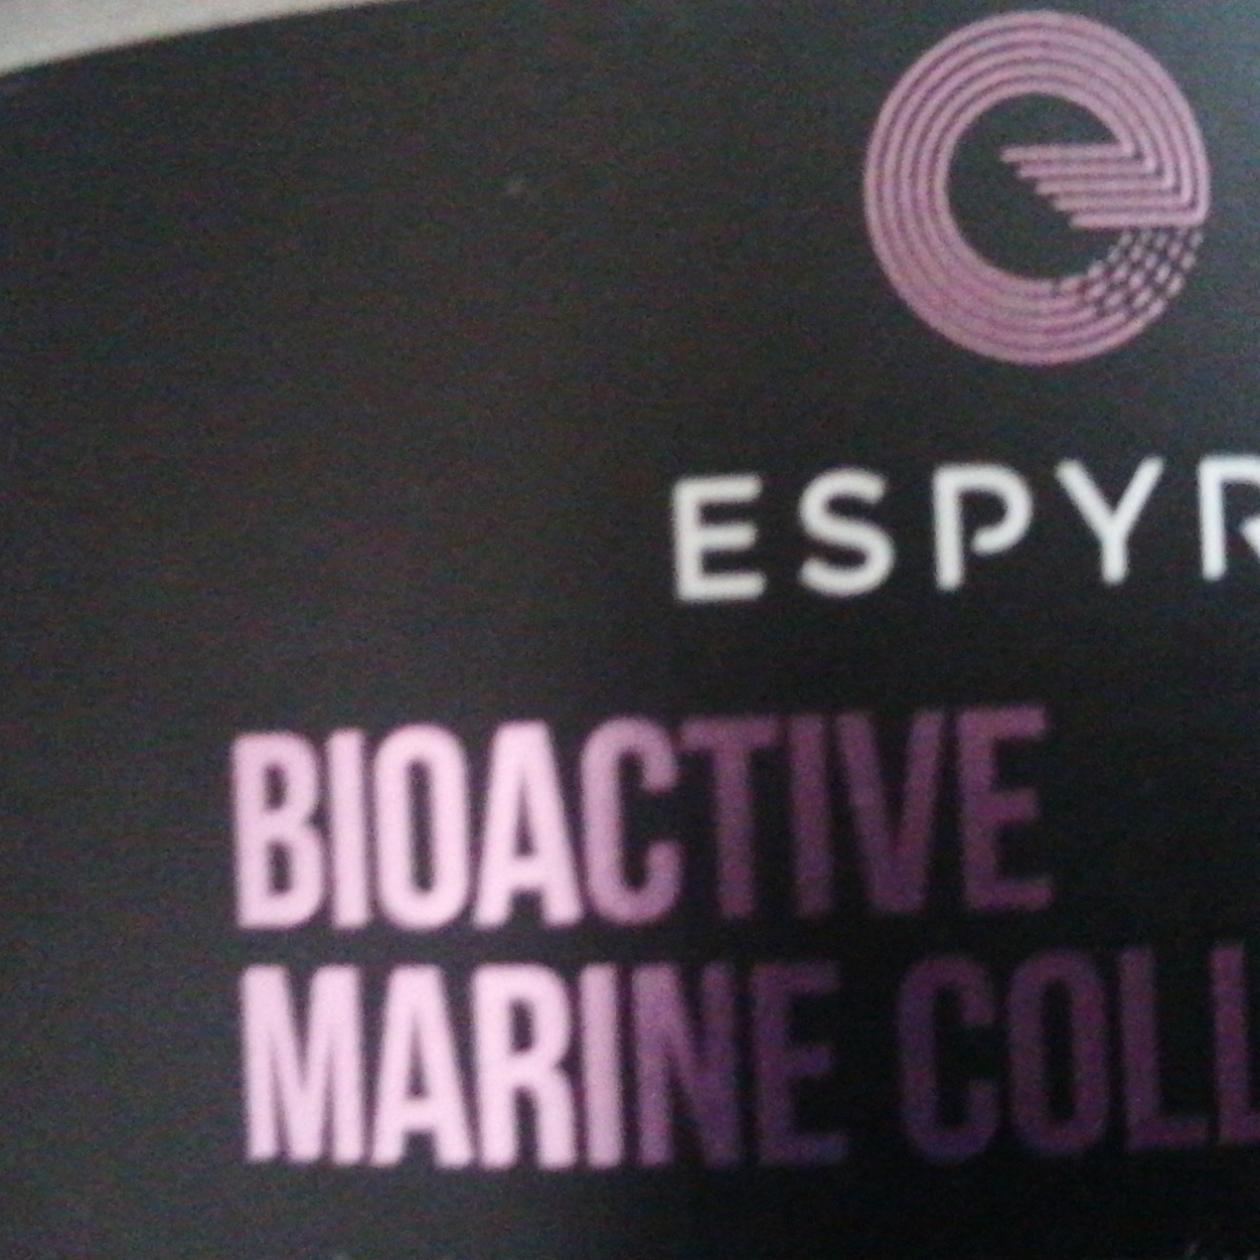 Fotografie - Bioactive Marine Collagen Espyre